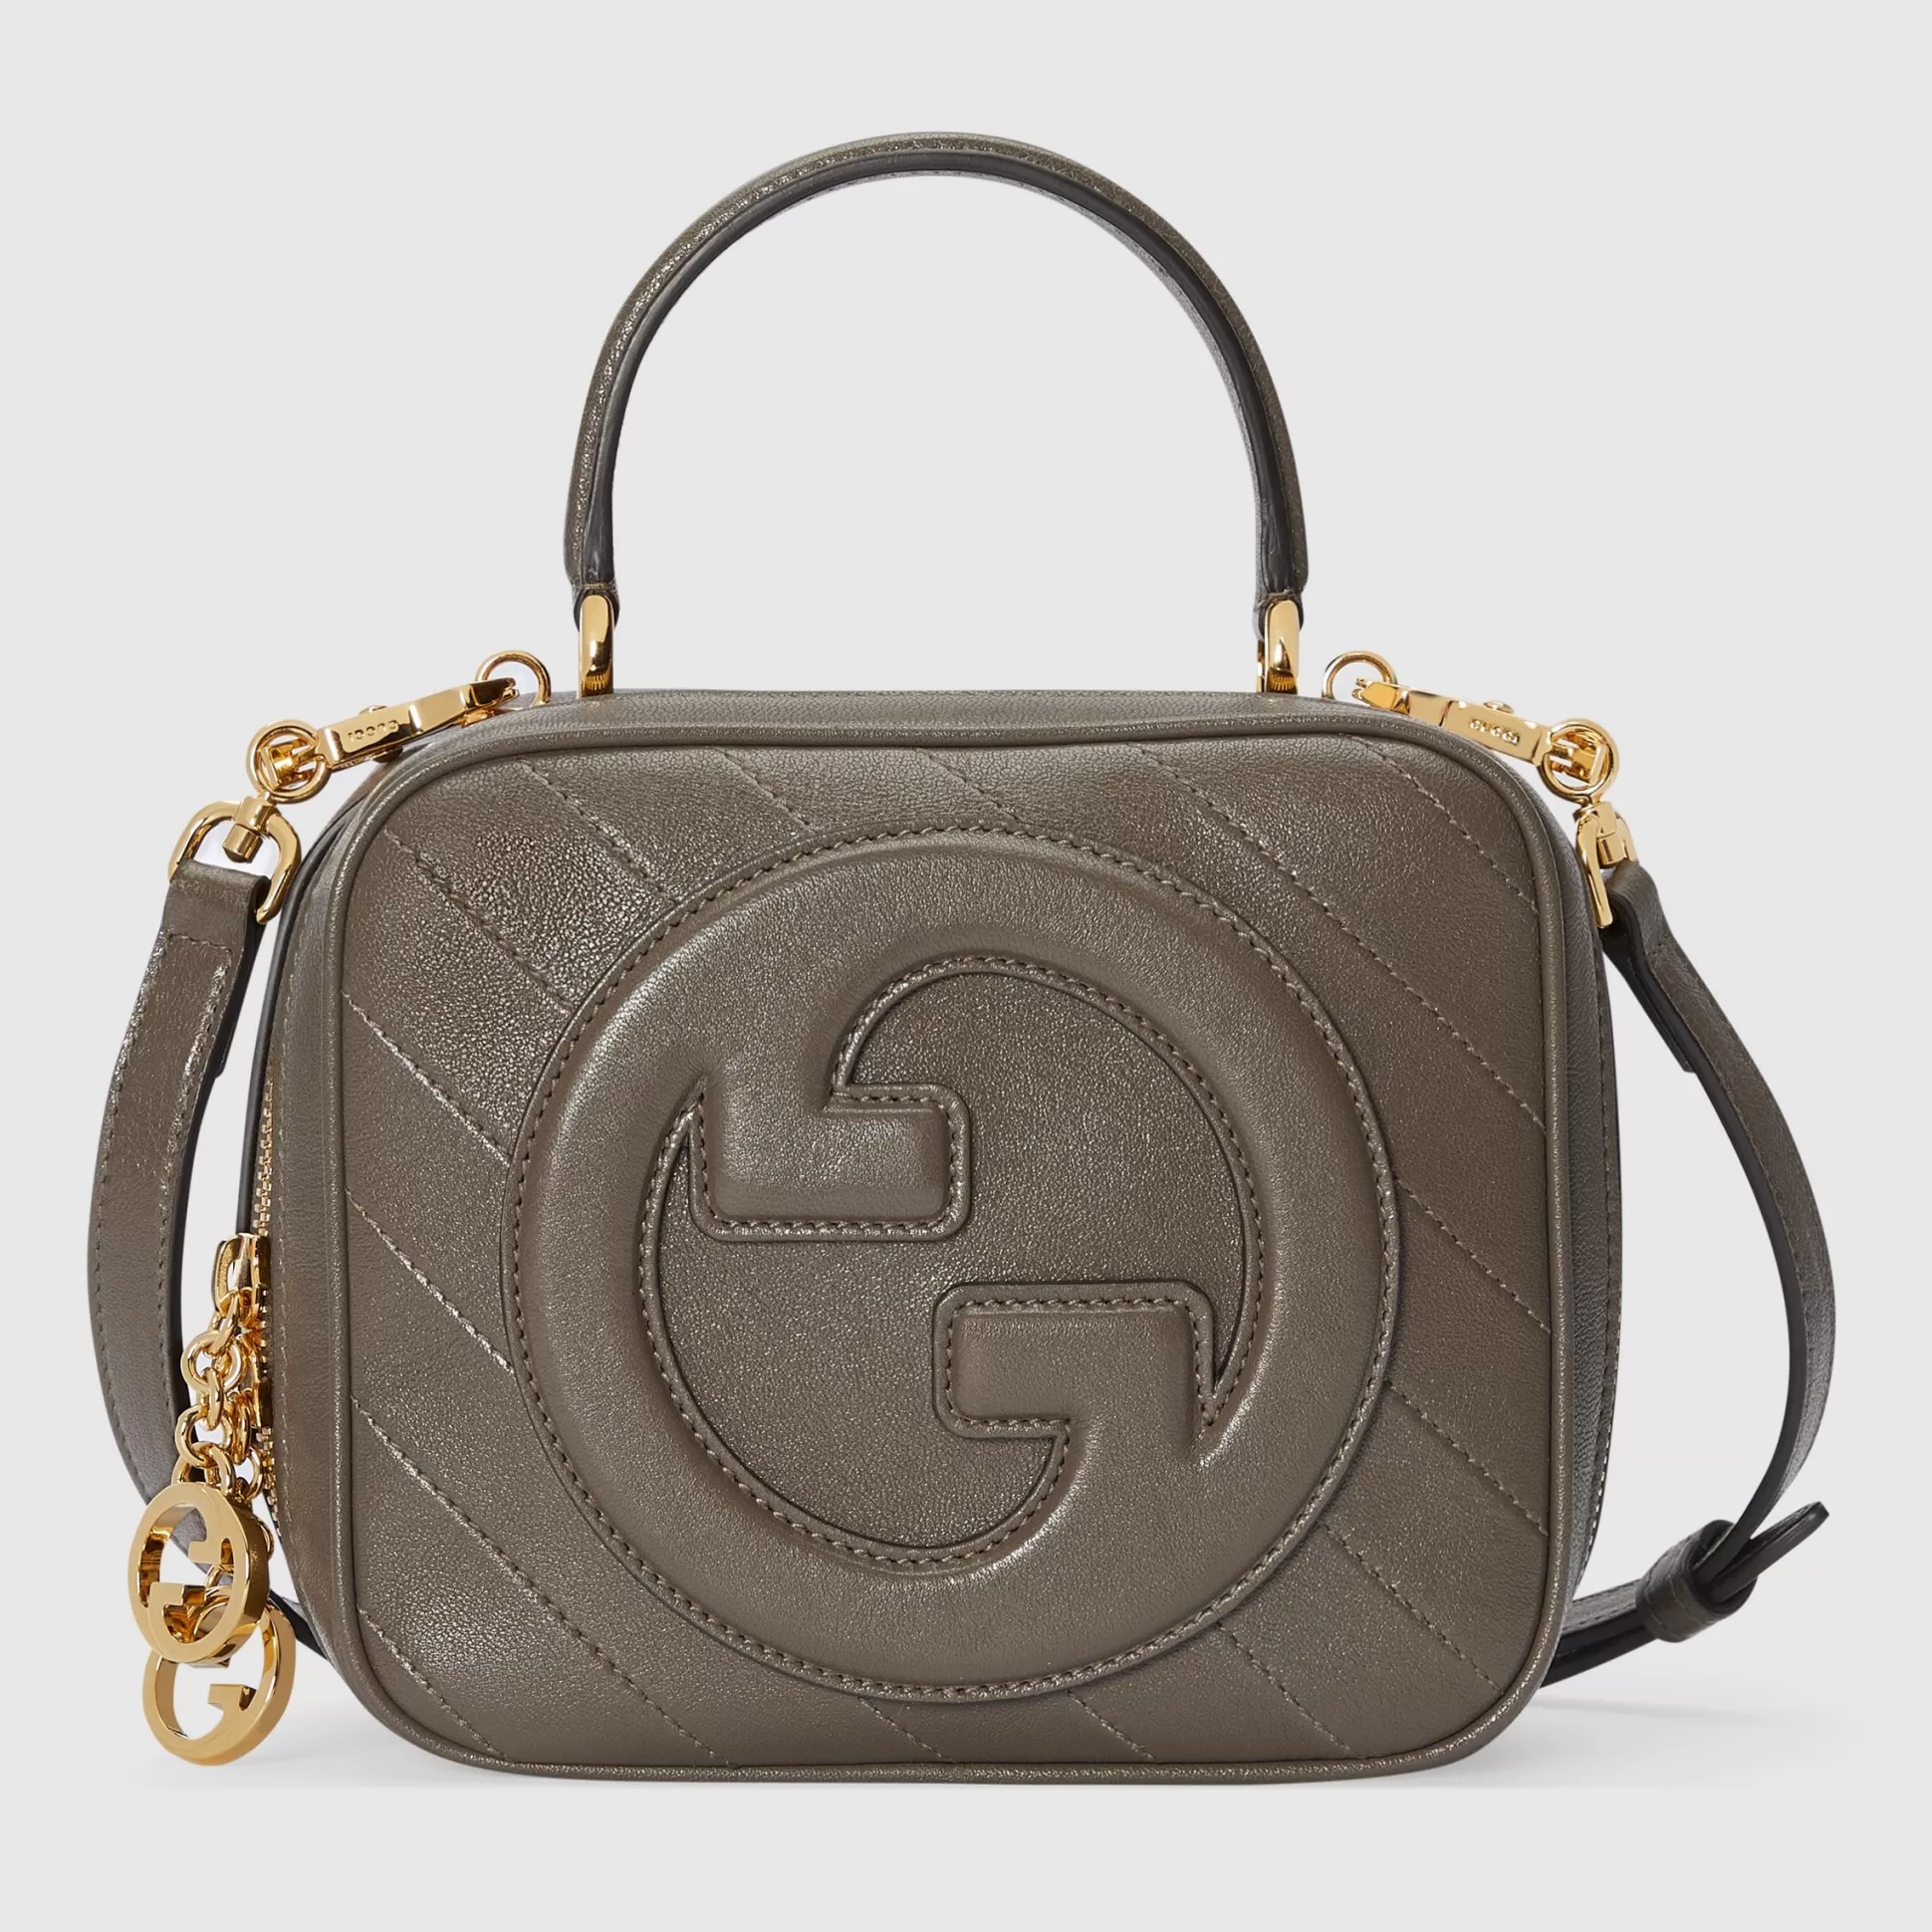 GUCCI Blondie Top Handle Bag-Women Top Handle Bags